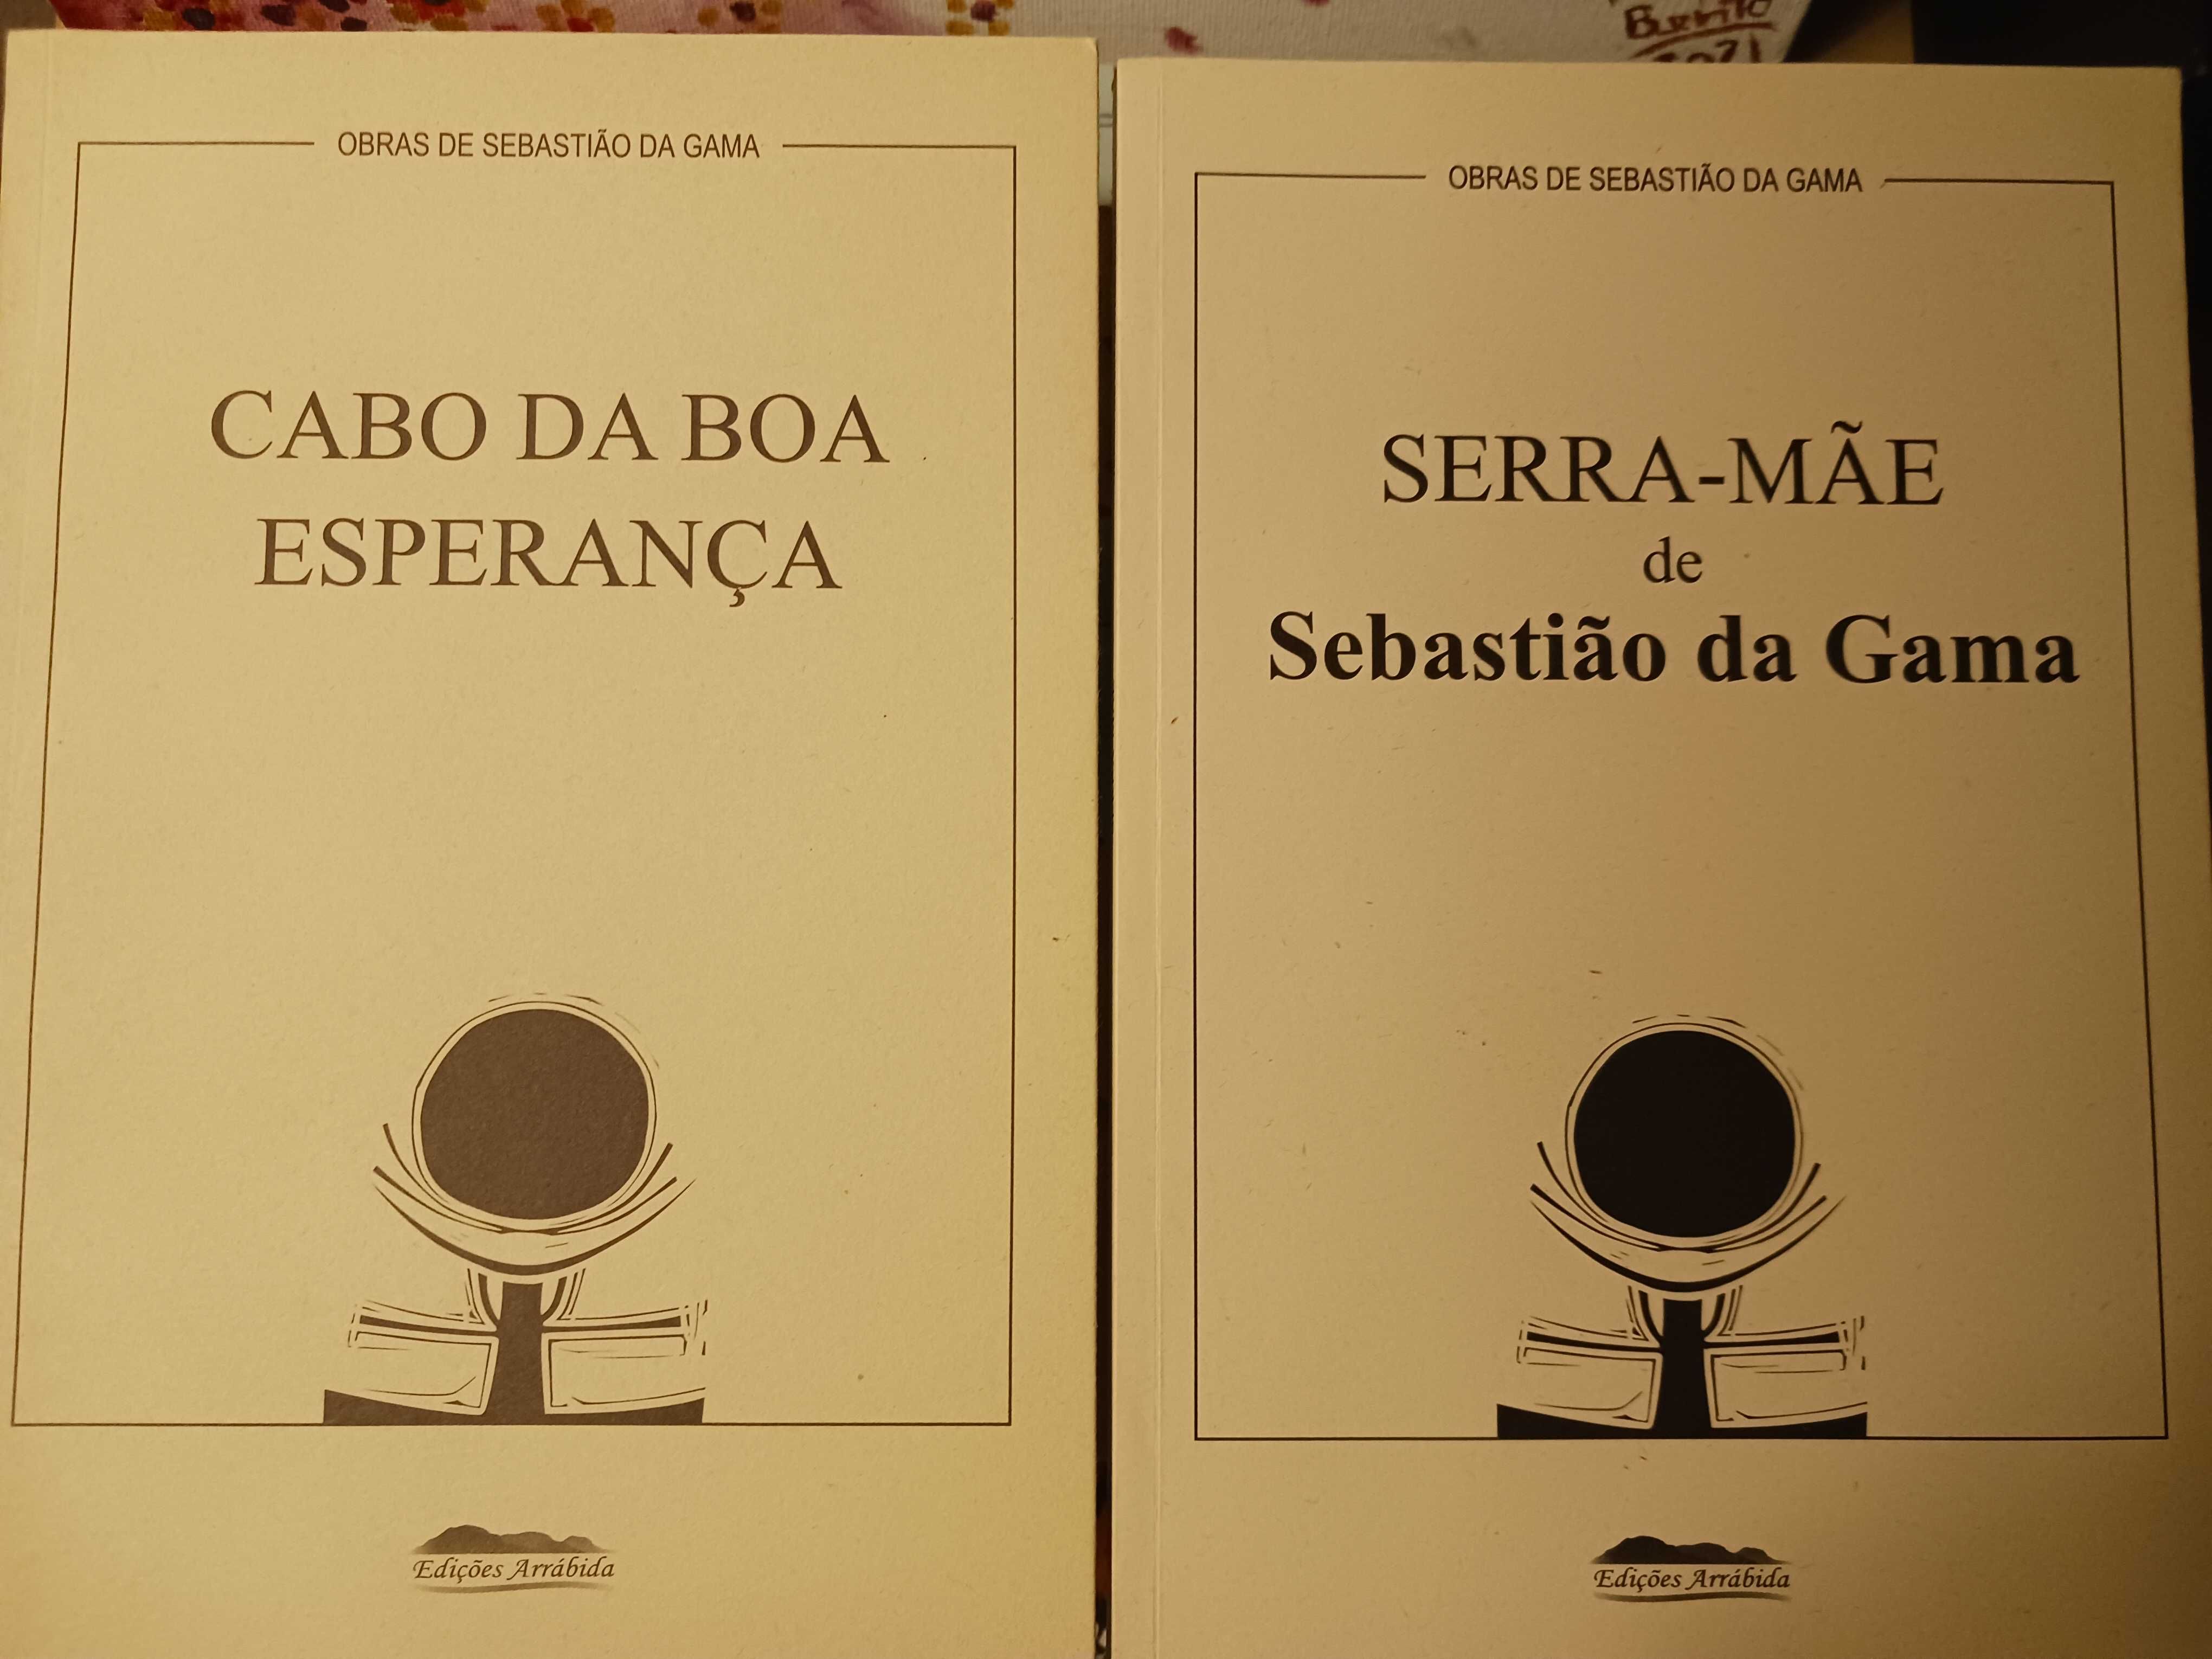 Obras de Sebastião da Gama